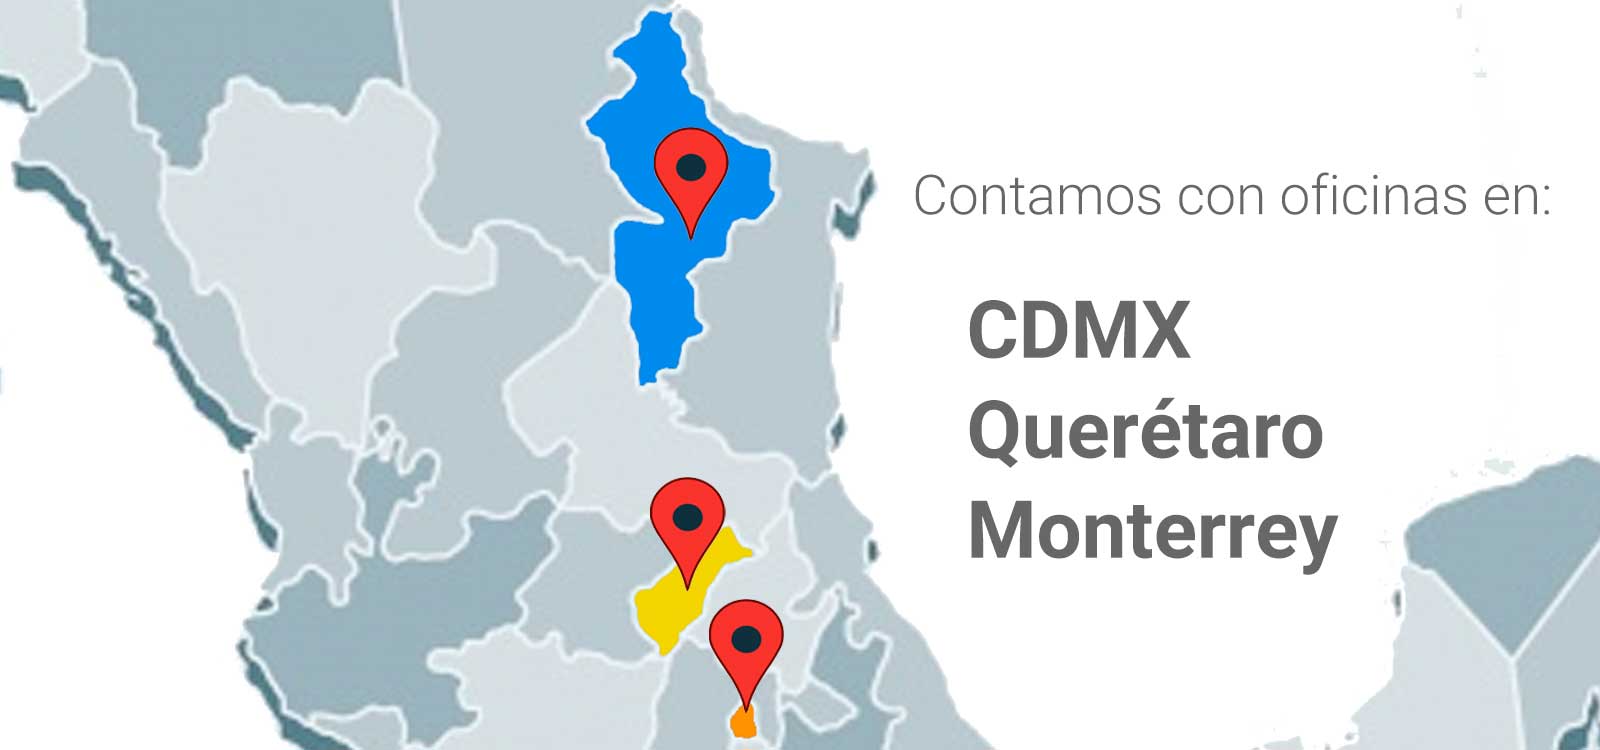 Oficinas en: CDMX, Querétaro y Monterrey